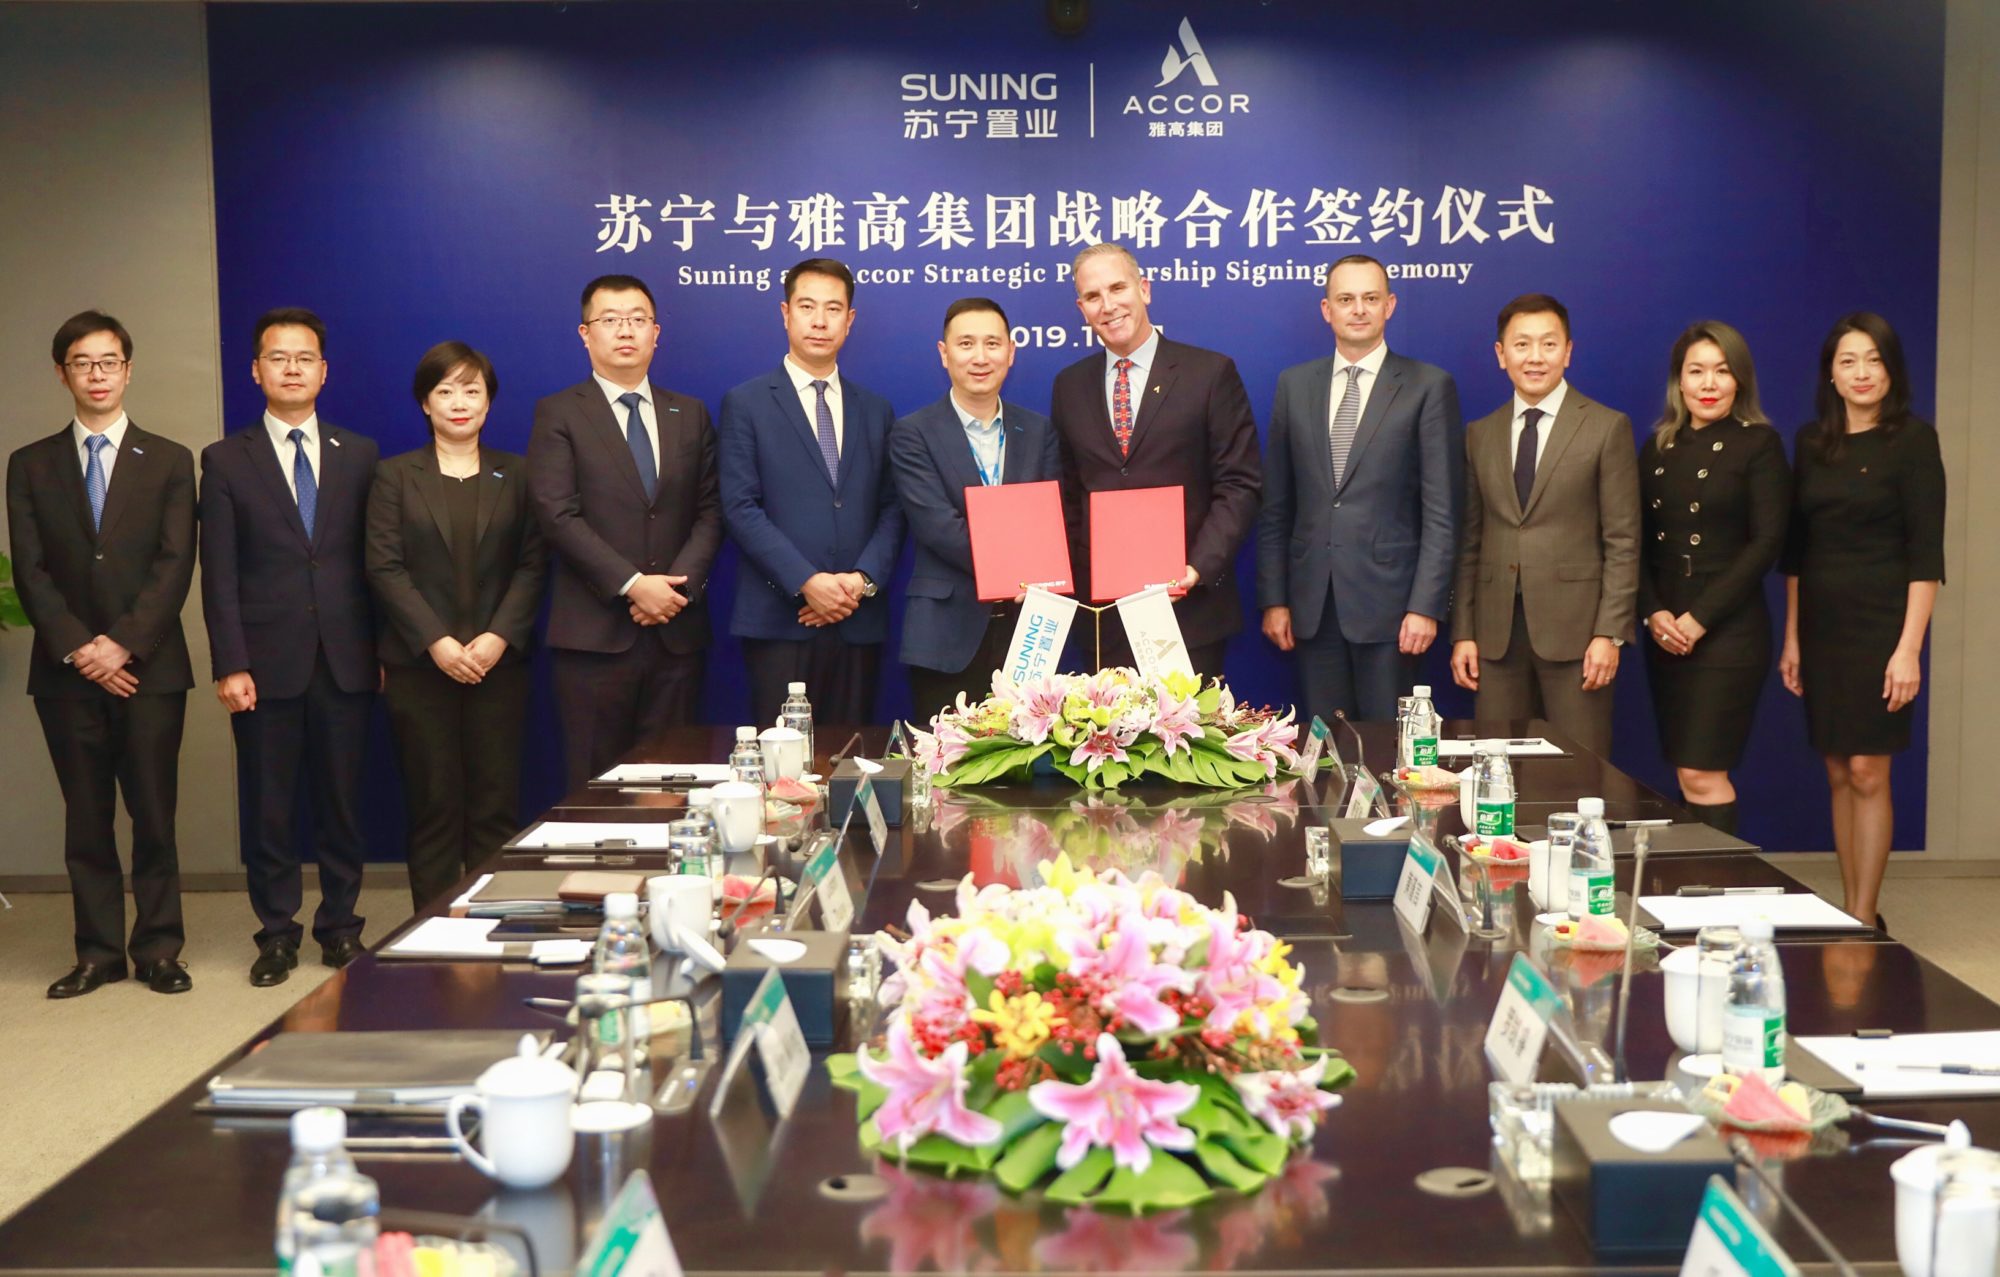 Accor Suning strategic partnership signing